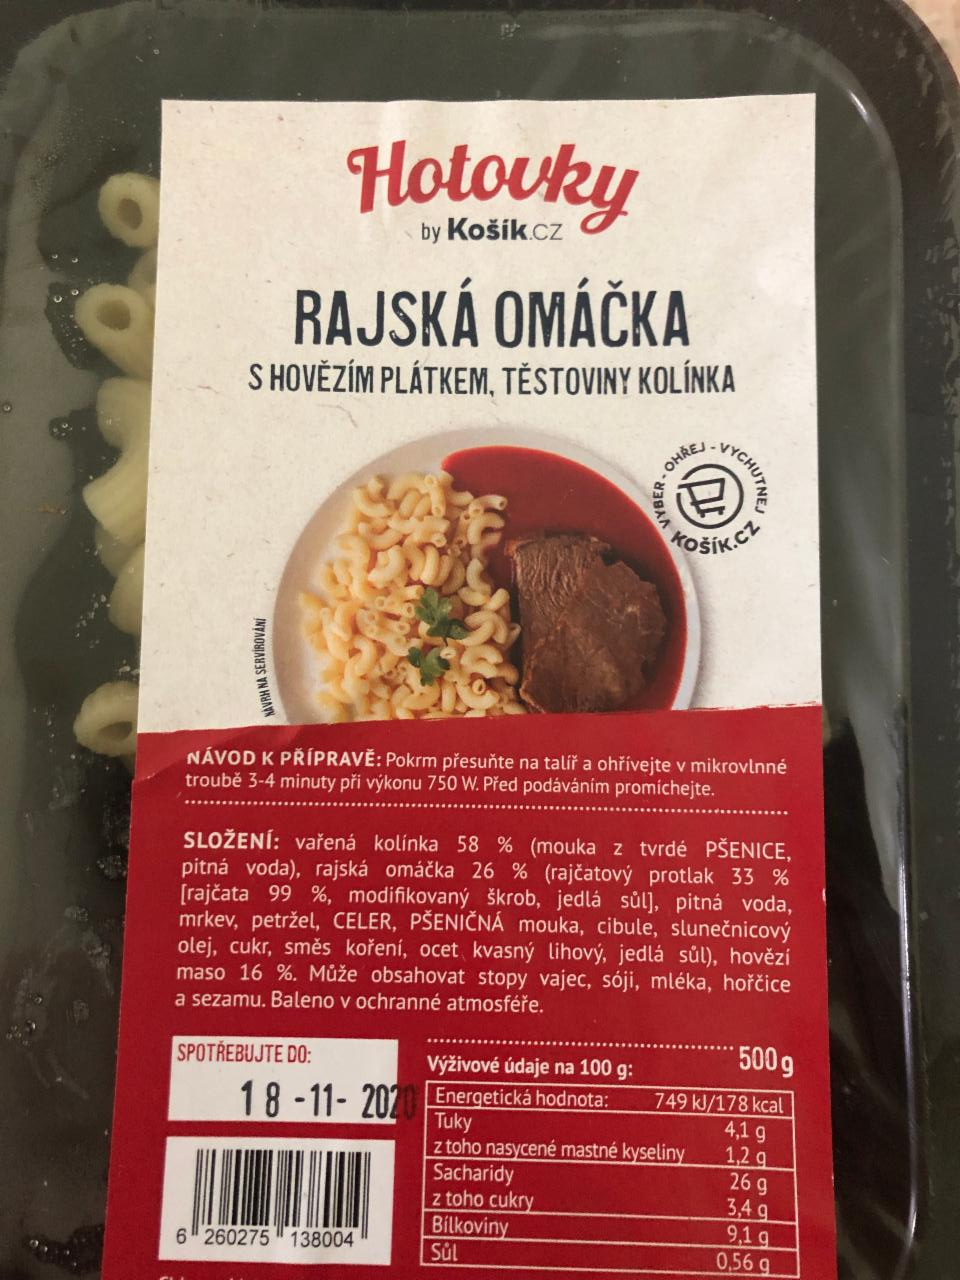 Fotografie - Rajská omáčka s hovězím plátkem a kolínky Hotovky by Košík.cz